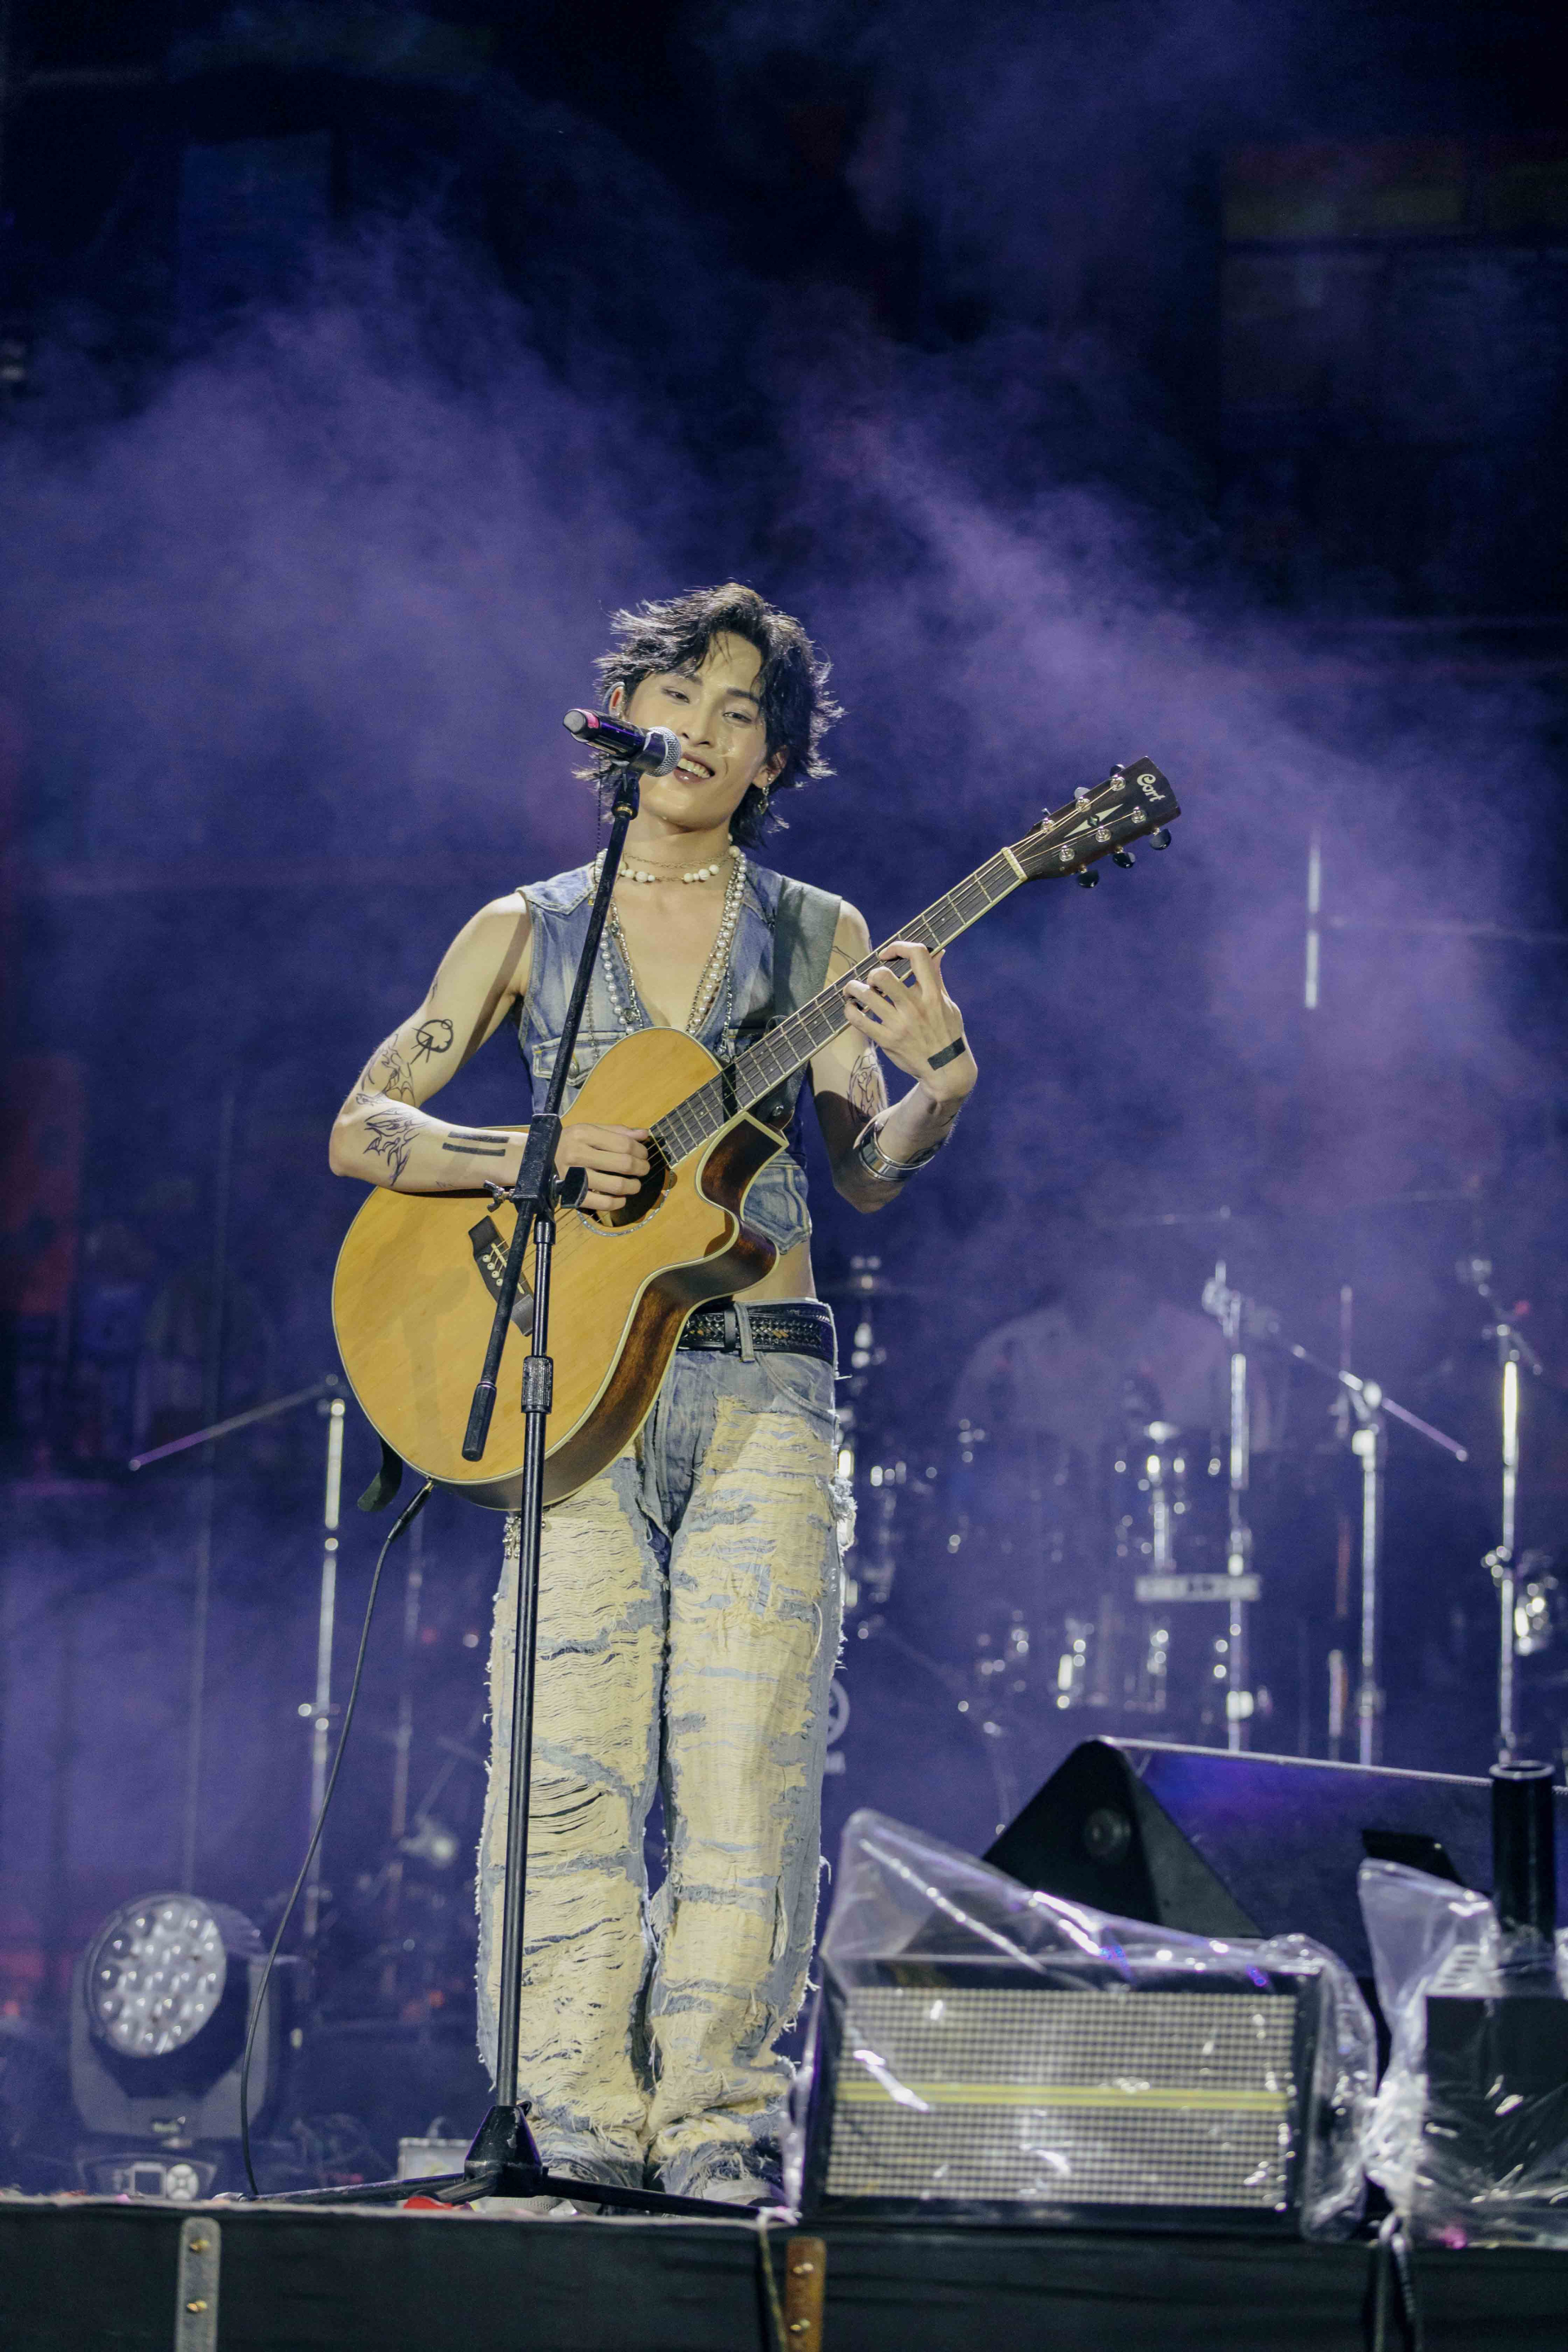 Cũng trong cuối tuần qua, anh chàng đã mang hình ảnh này lên sân khấu của một lễ hội âm nhạc tại TP.Hồ Chí Minh và lần đầu tiên trình diễn ca khúc comeback của mình trước ngày chính thức lên sóng.